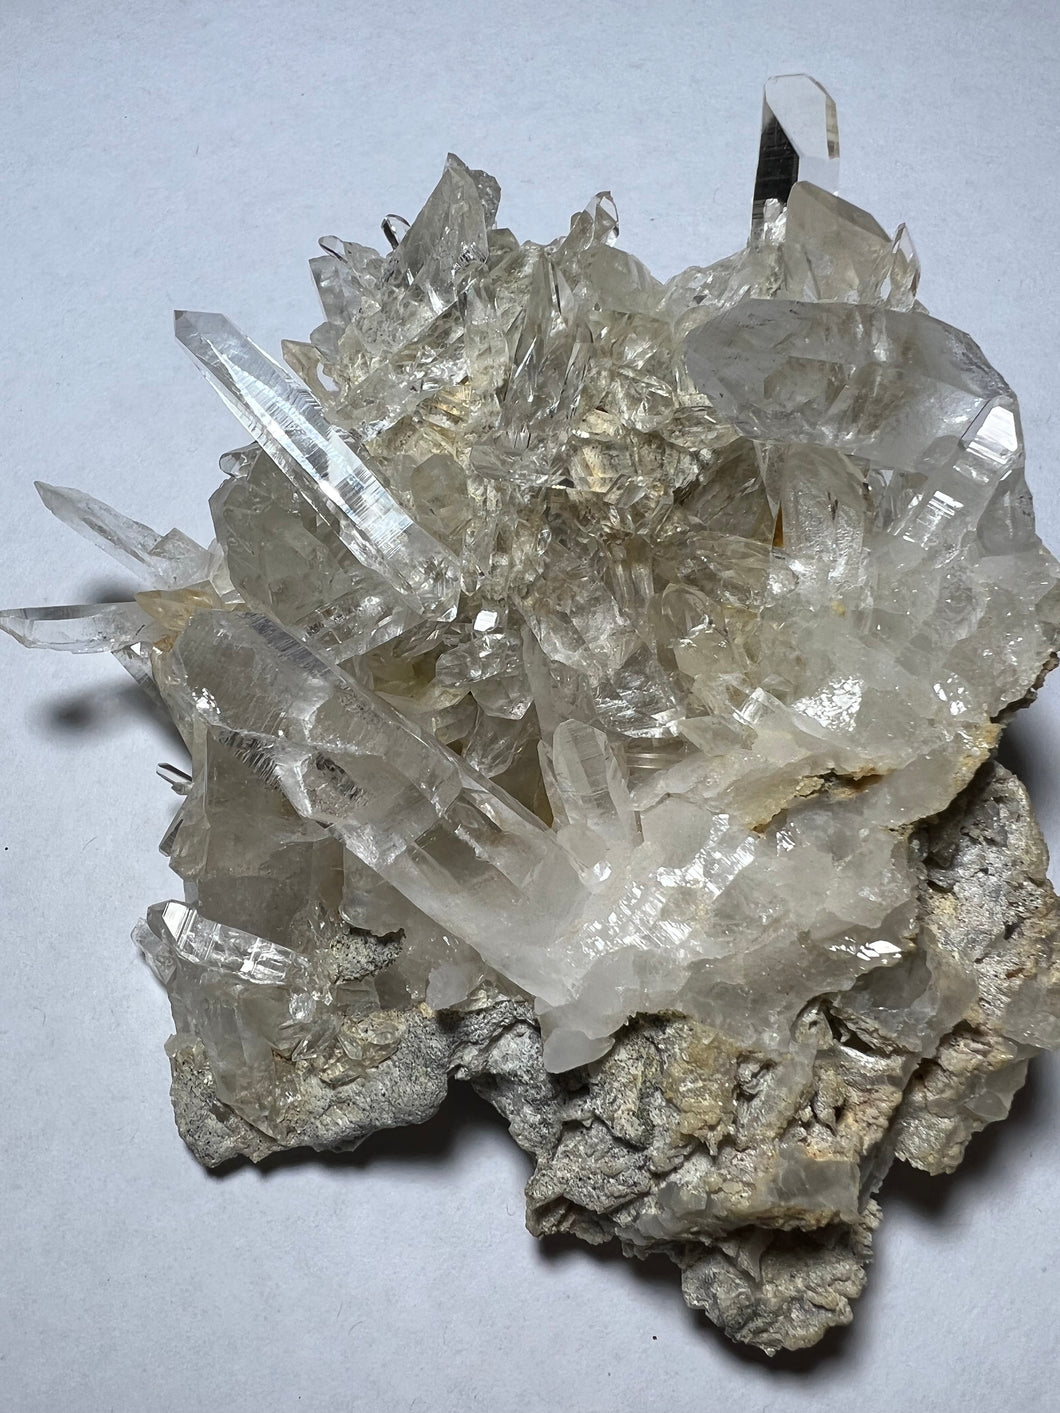 Samadhi quartz Himalayan